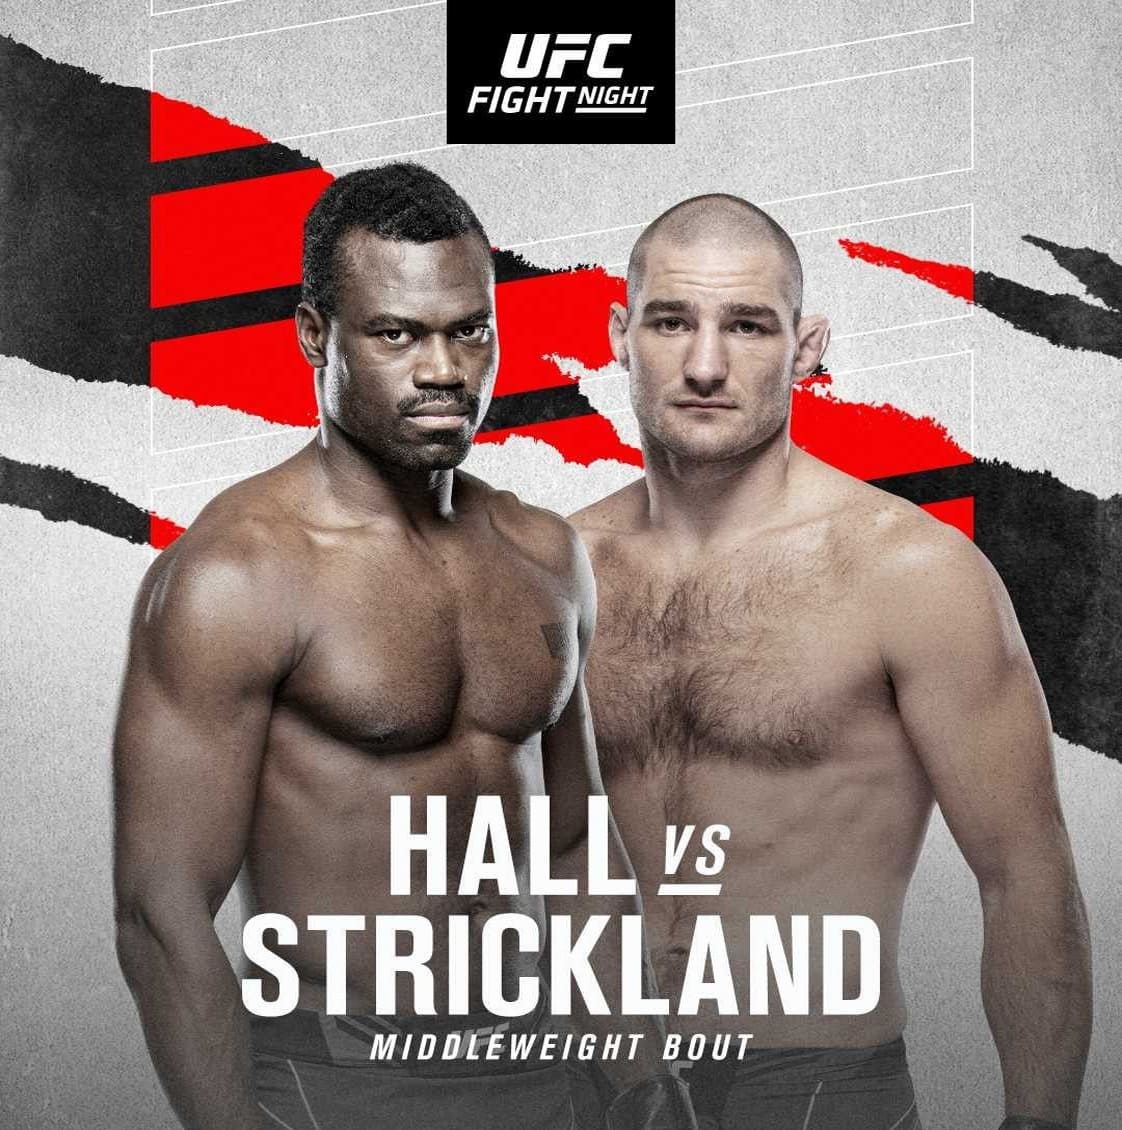 UFC on ESPN 28: Холл - Стриклэнд дата проведения, кард, участники и результаты